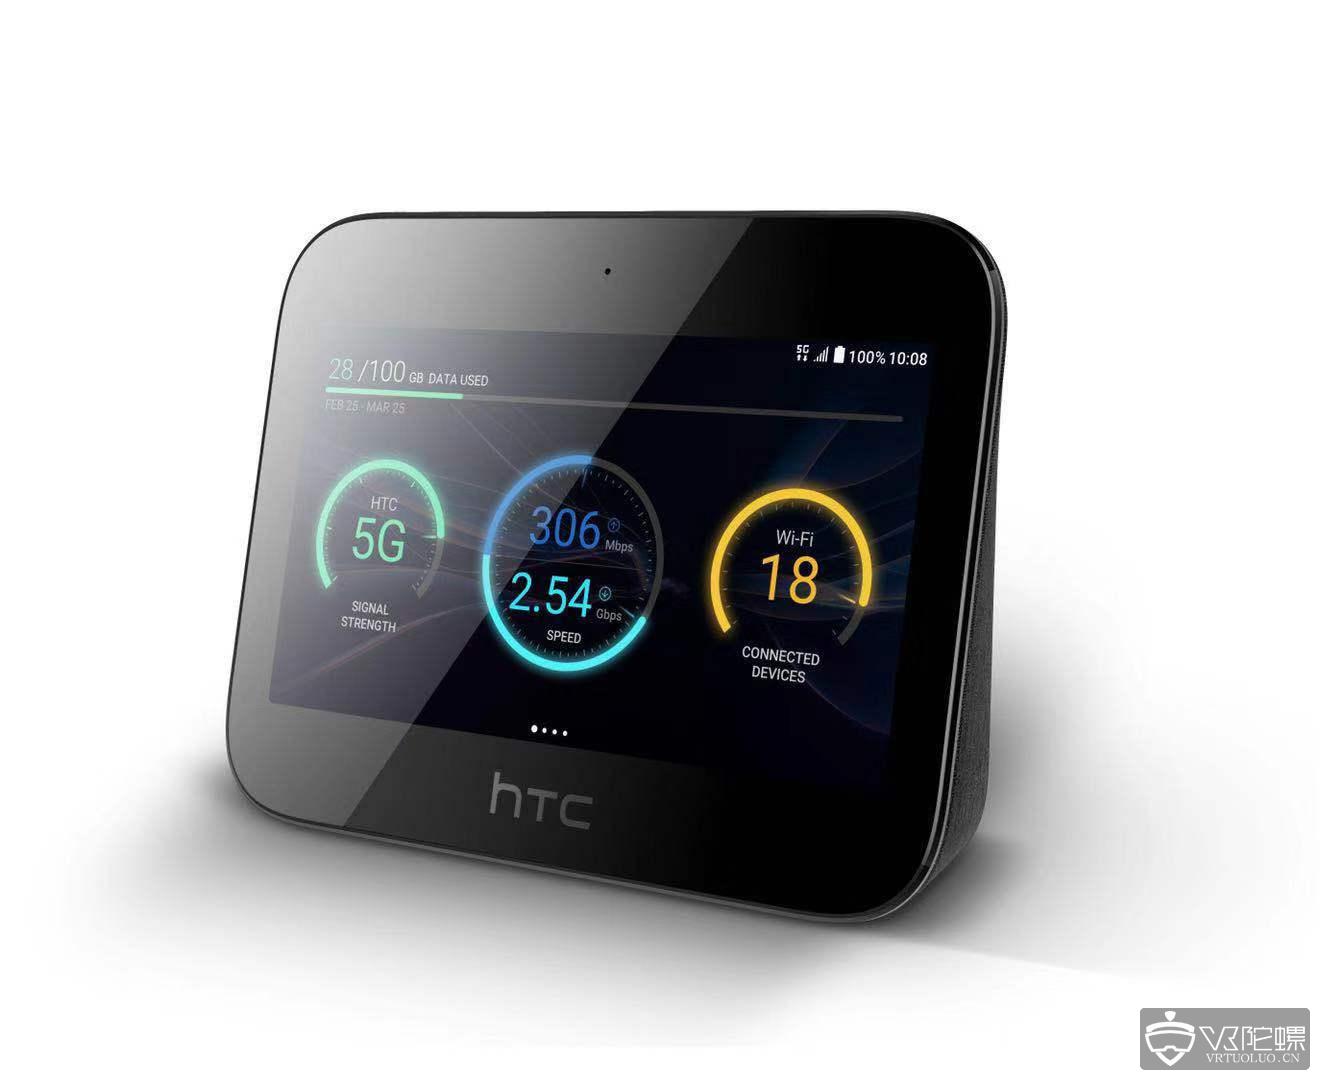 【MWC2019】HTC 展示创新 5G 移动智能网络中心HTC 5G Hub，将支持Vive Focus联动